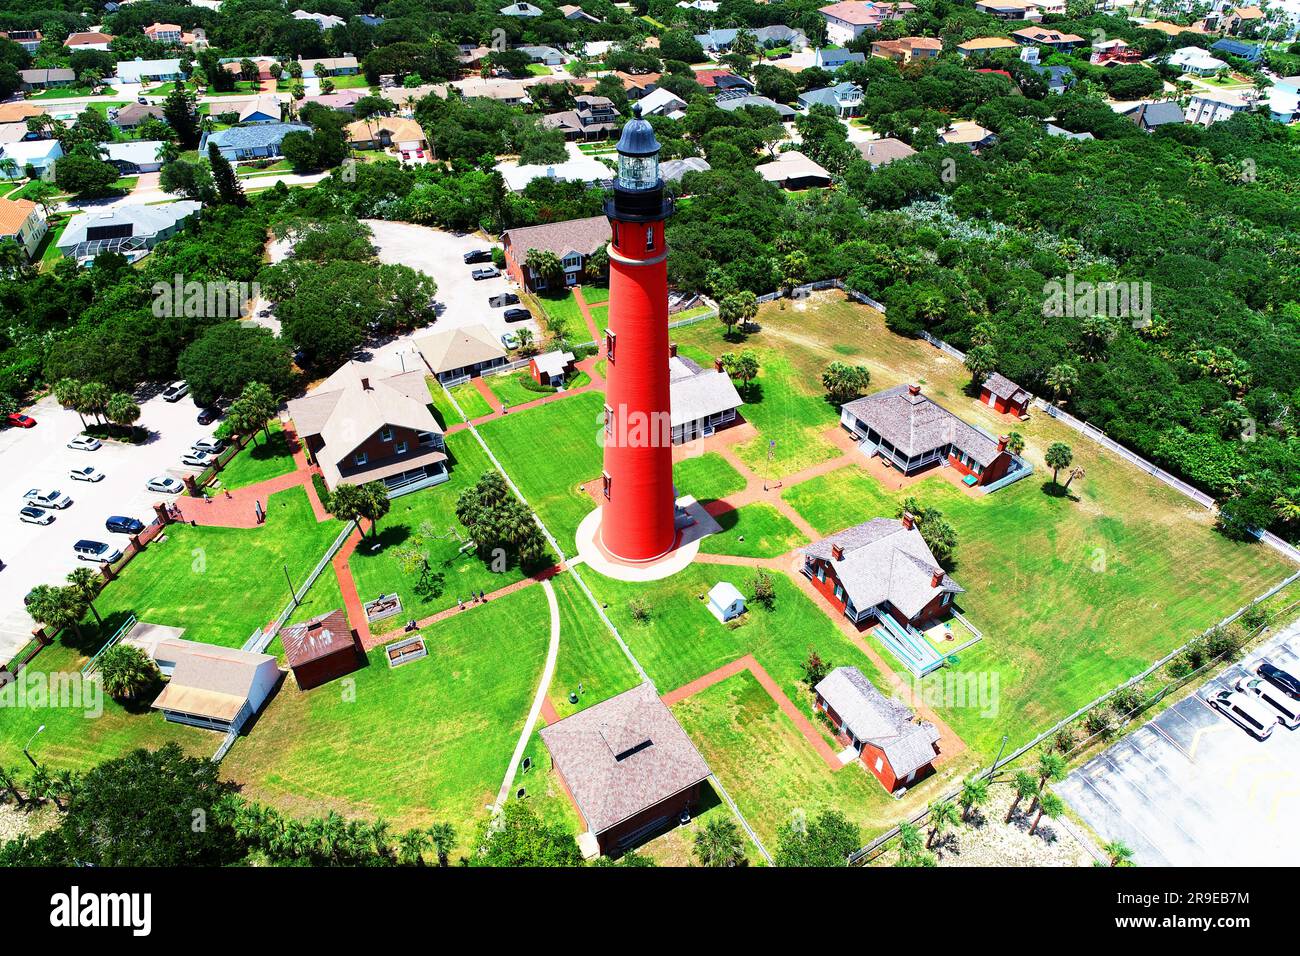 Das Ponce de Leon Inlet Light ist ein Leuchtturm und Museum am Ponce de León Inlet in Daytona, Florida. Der Leuchtturm ist ein Bauwerk wie ein Turm Stockfoto